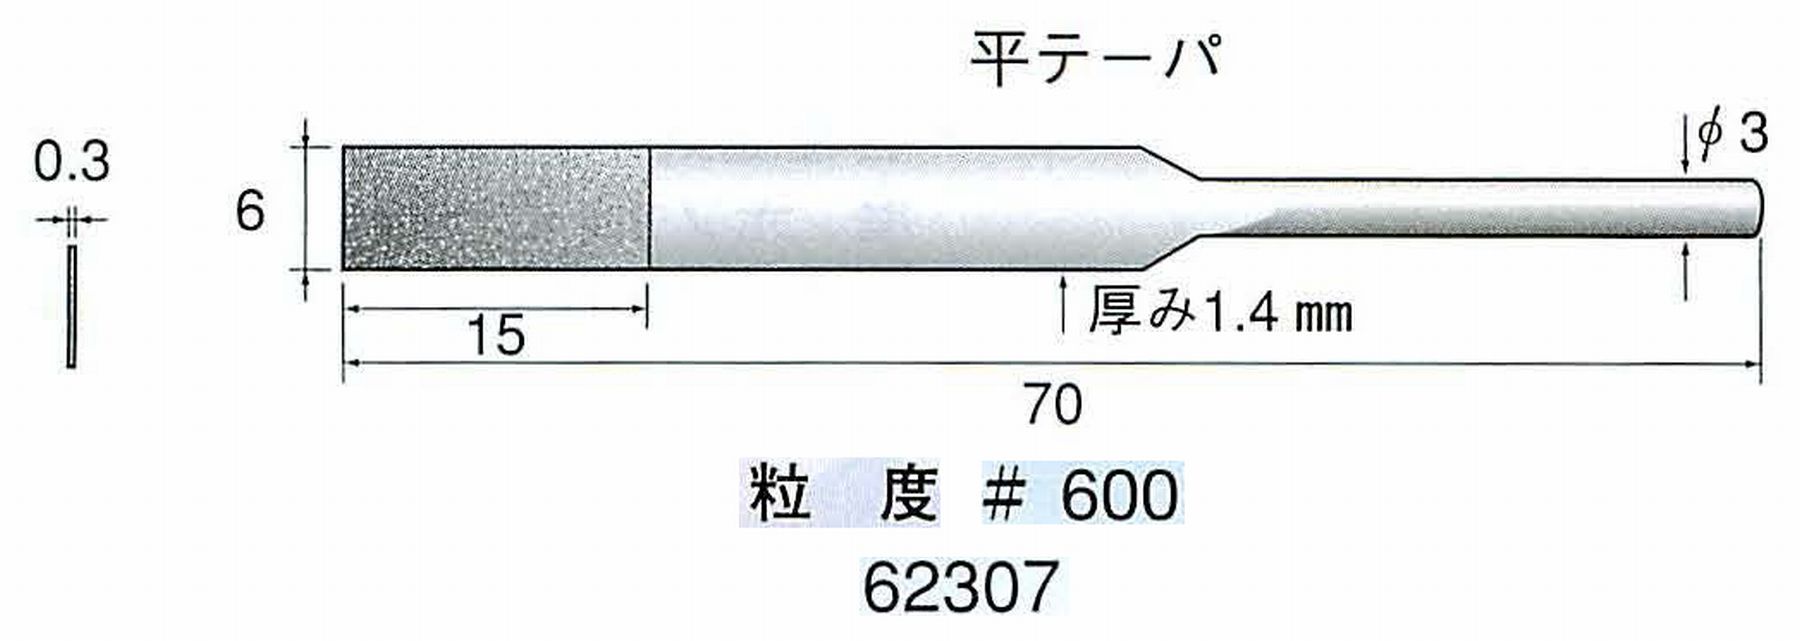 ナカニシ/NAKANISHI 電着ダイヤモンドヤスリショートタイプ 平テーパ 62307